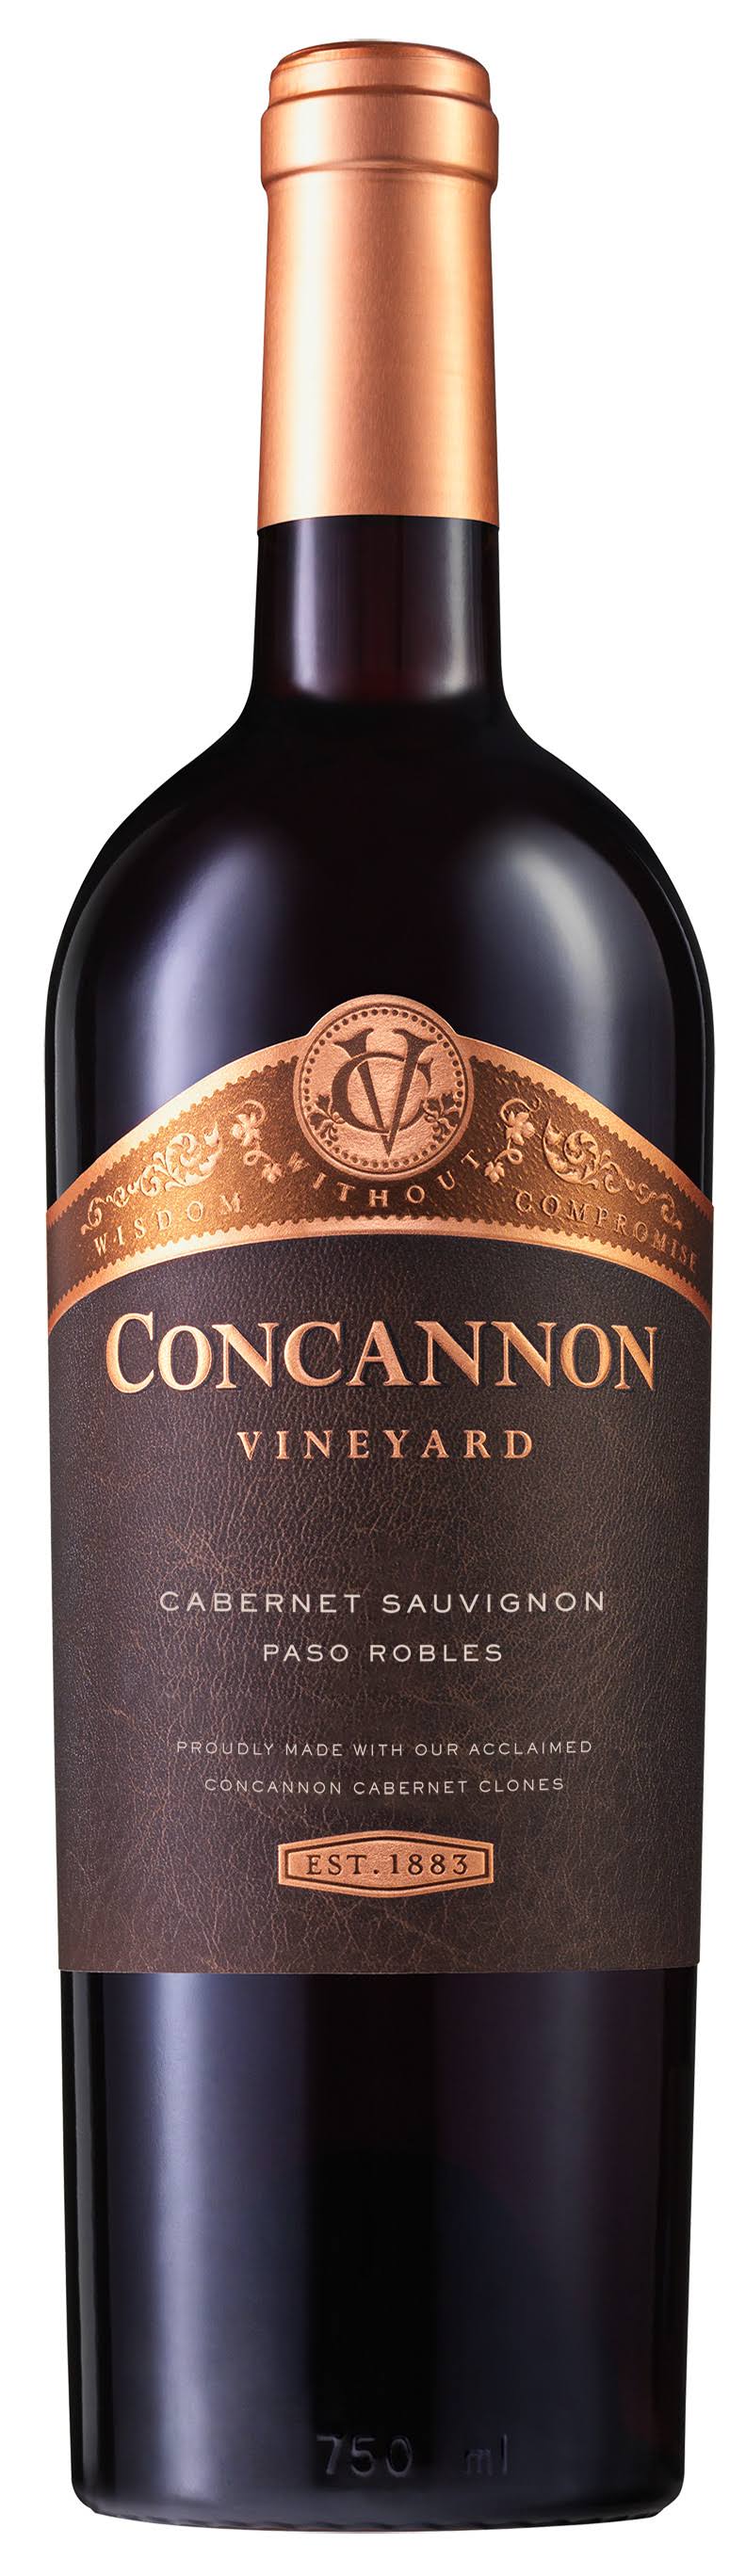 Concannon Cabernet Sauvignon, Paso Robles (Vintage Varies) - 750 ml bottle